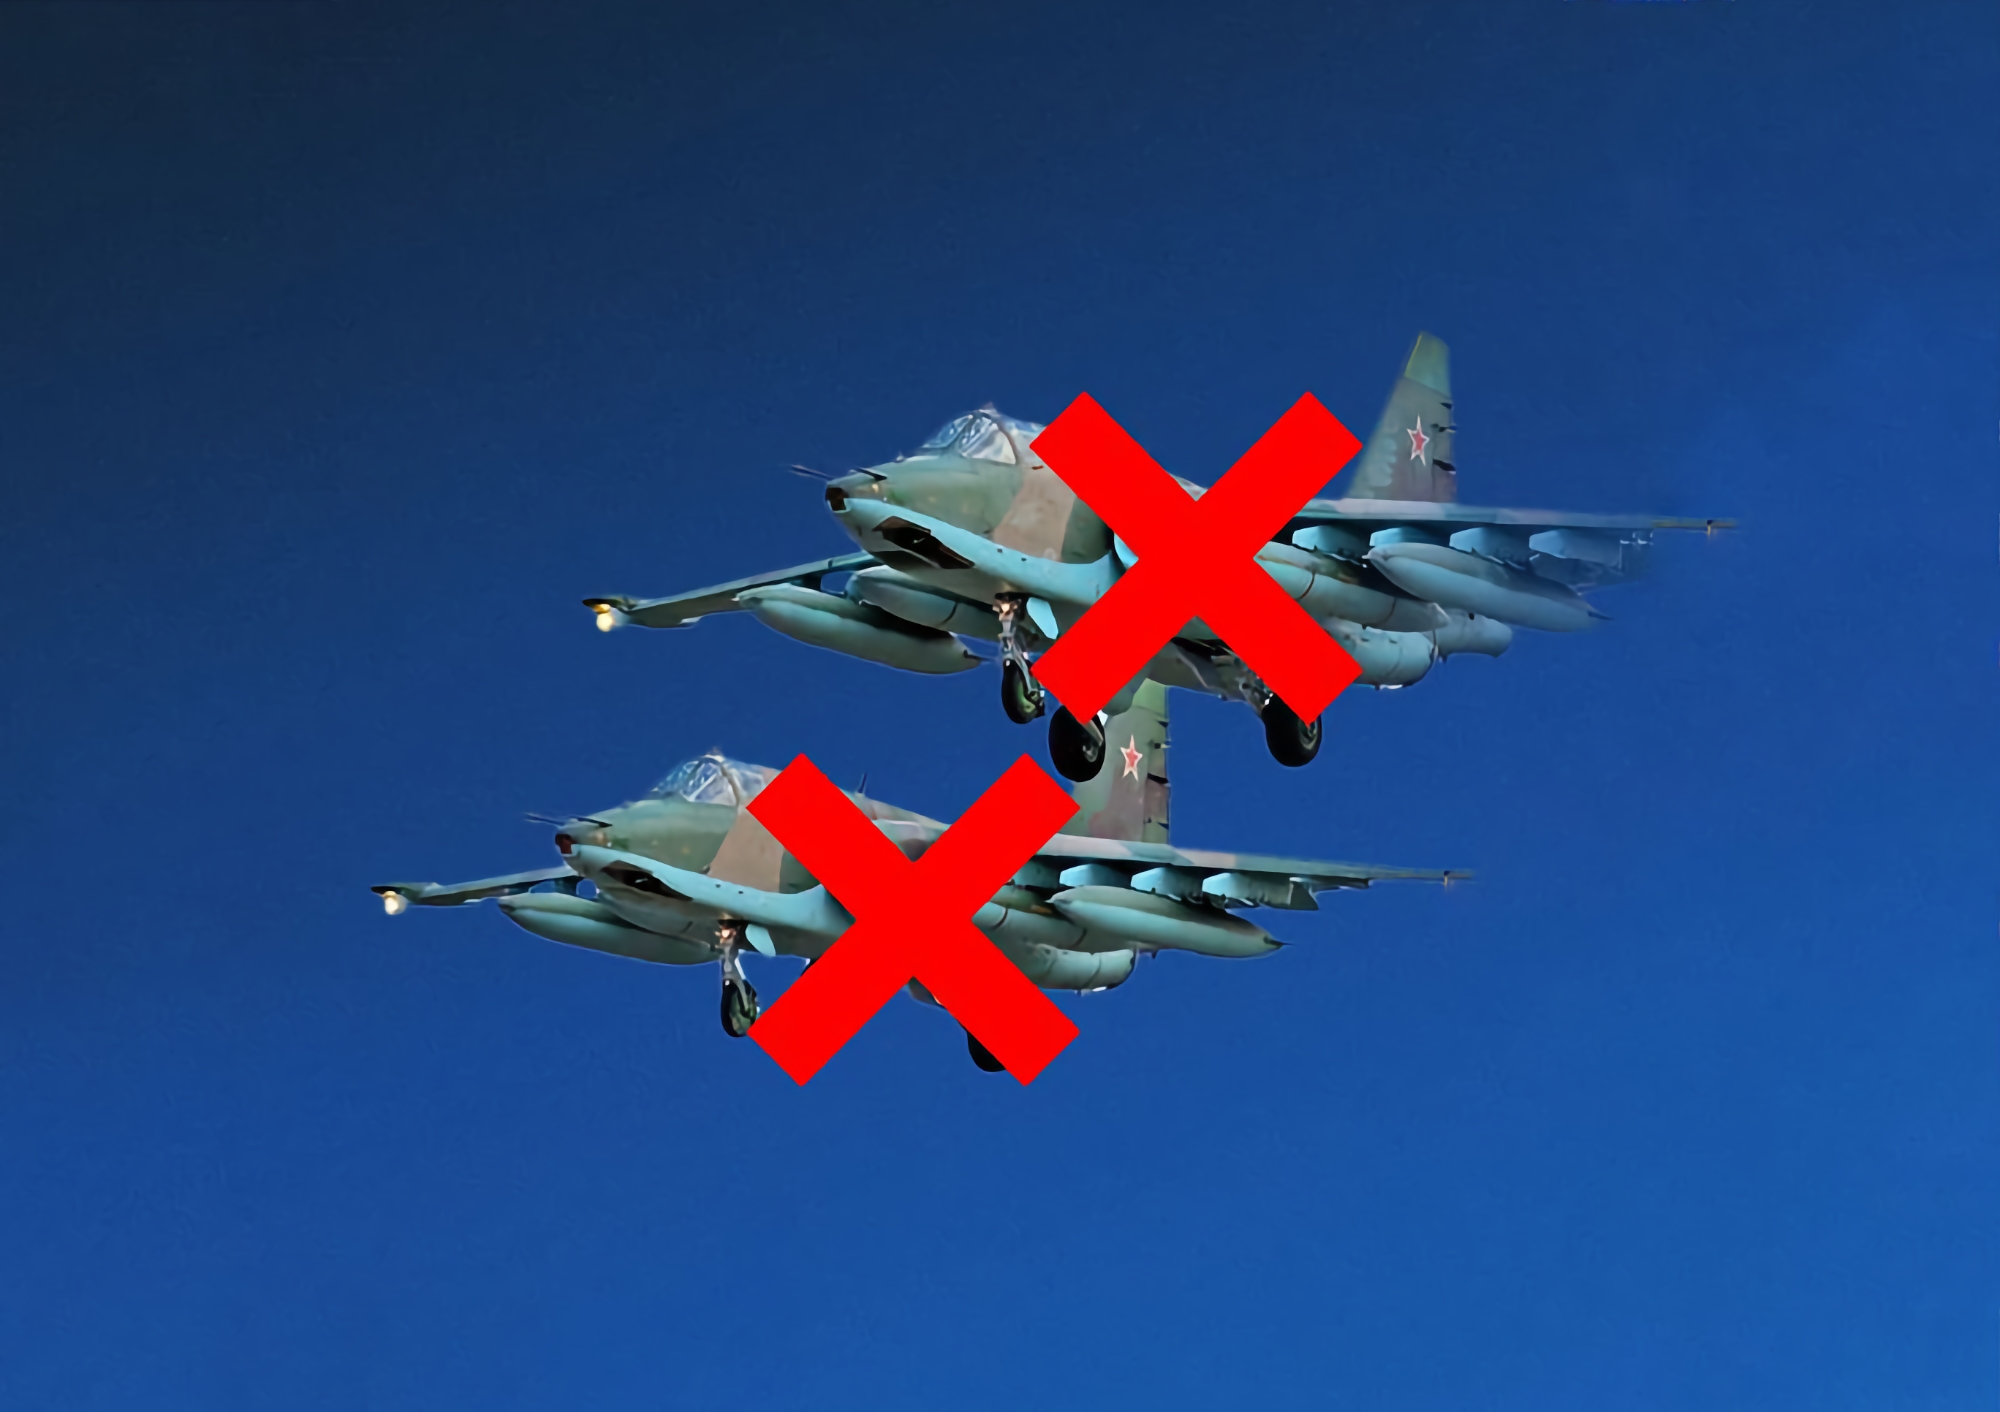 Lavoro congiunto delle forze armate dell'Ucraina e del servizio di sicurezza dell'Ucraina: i difensori ucraini hanno abbattuto due aerei Su-25 russi con l'aiuto di MANPADS